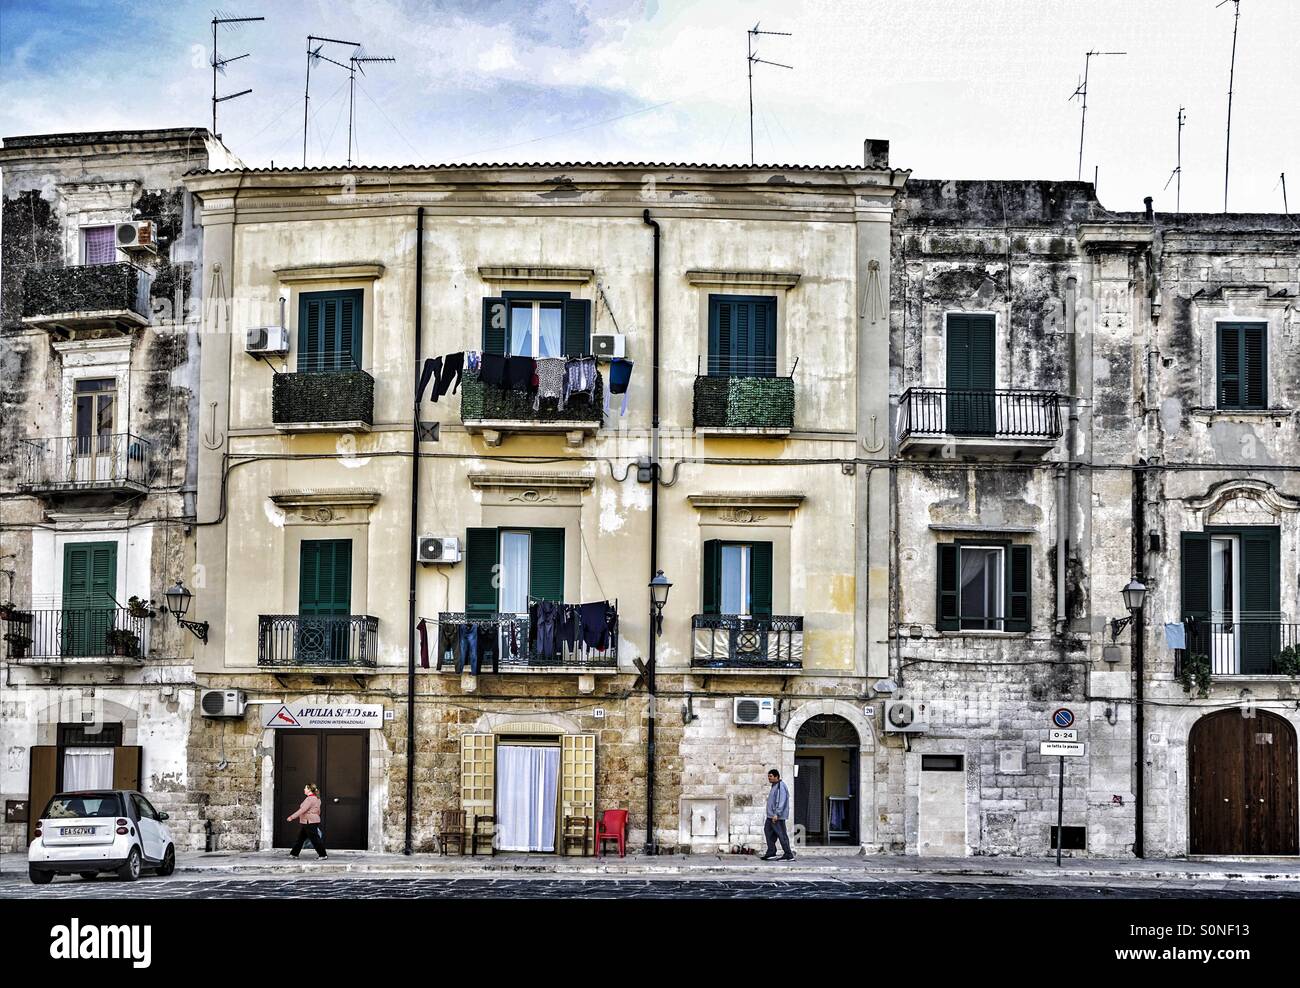 Appartements dans la ville de Bari en Italie Banque D'Images